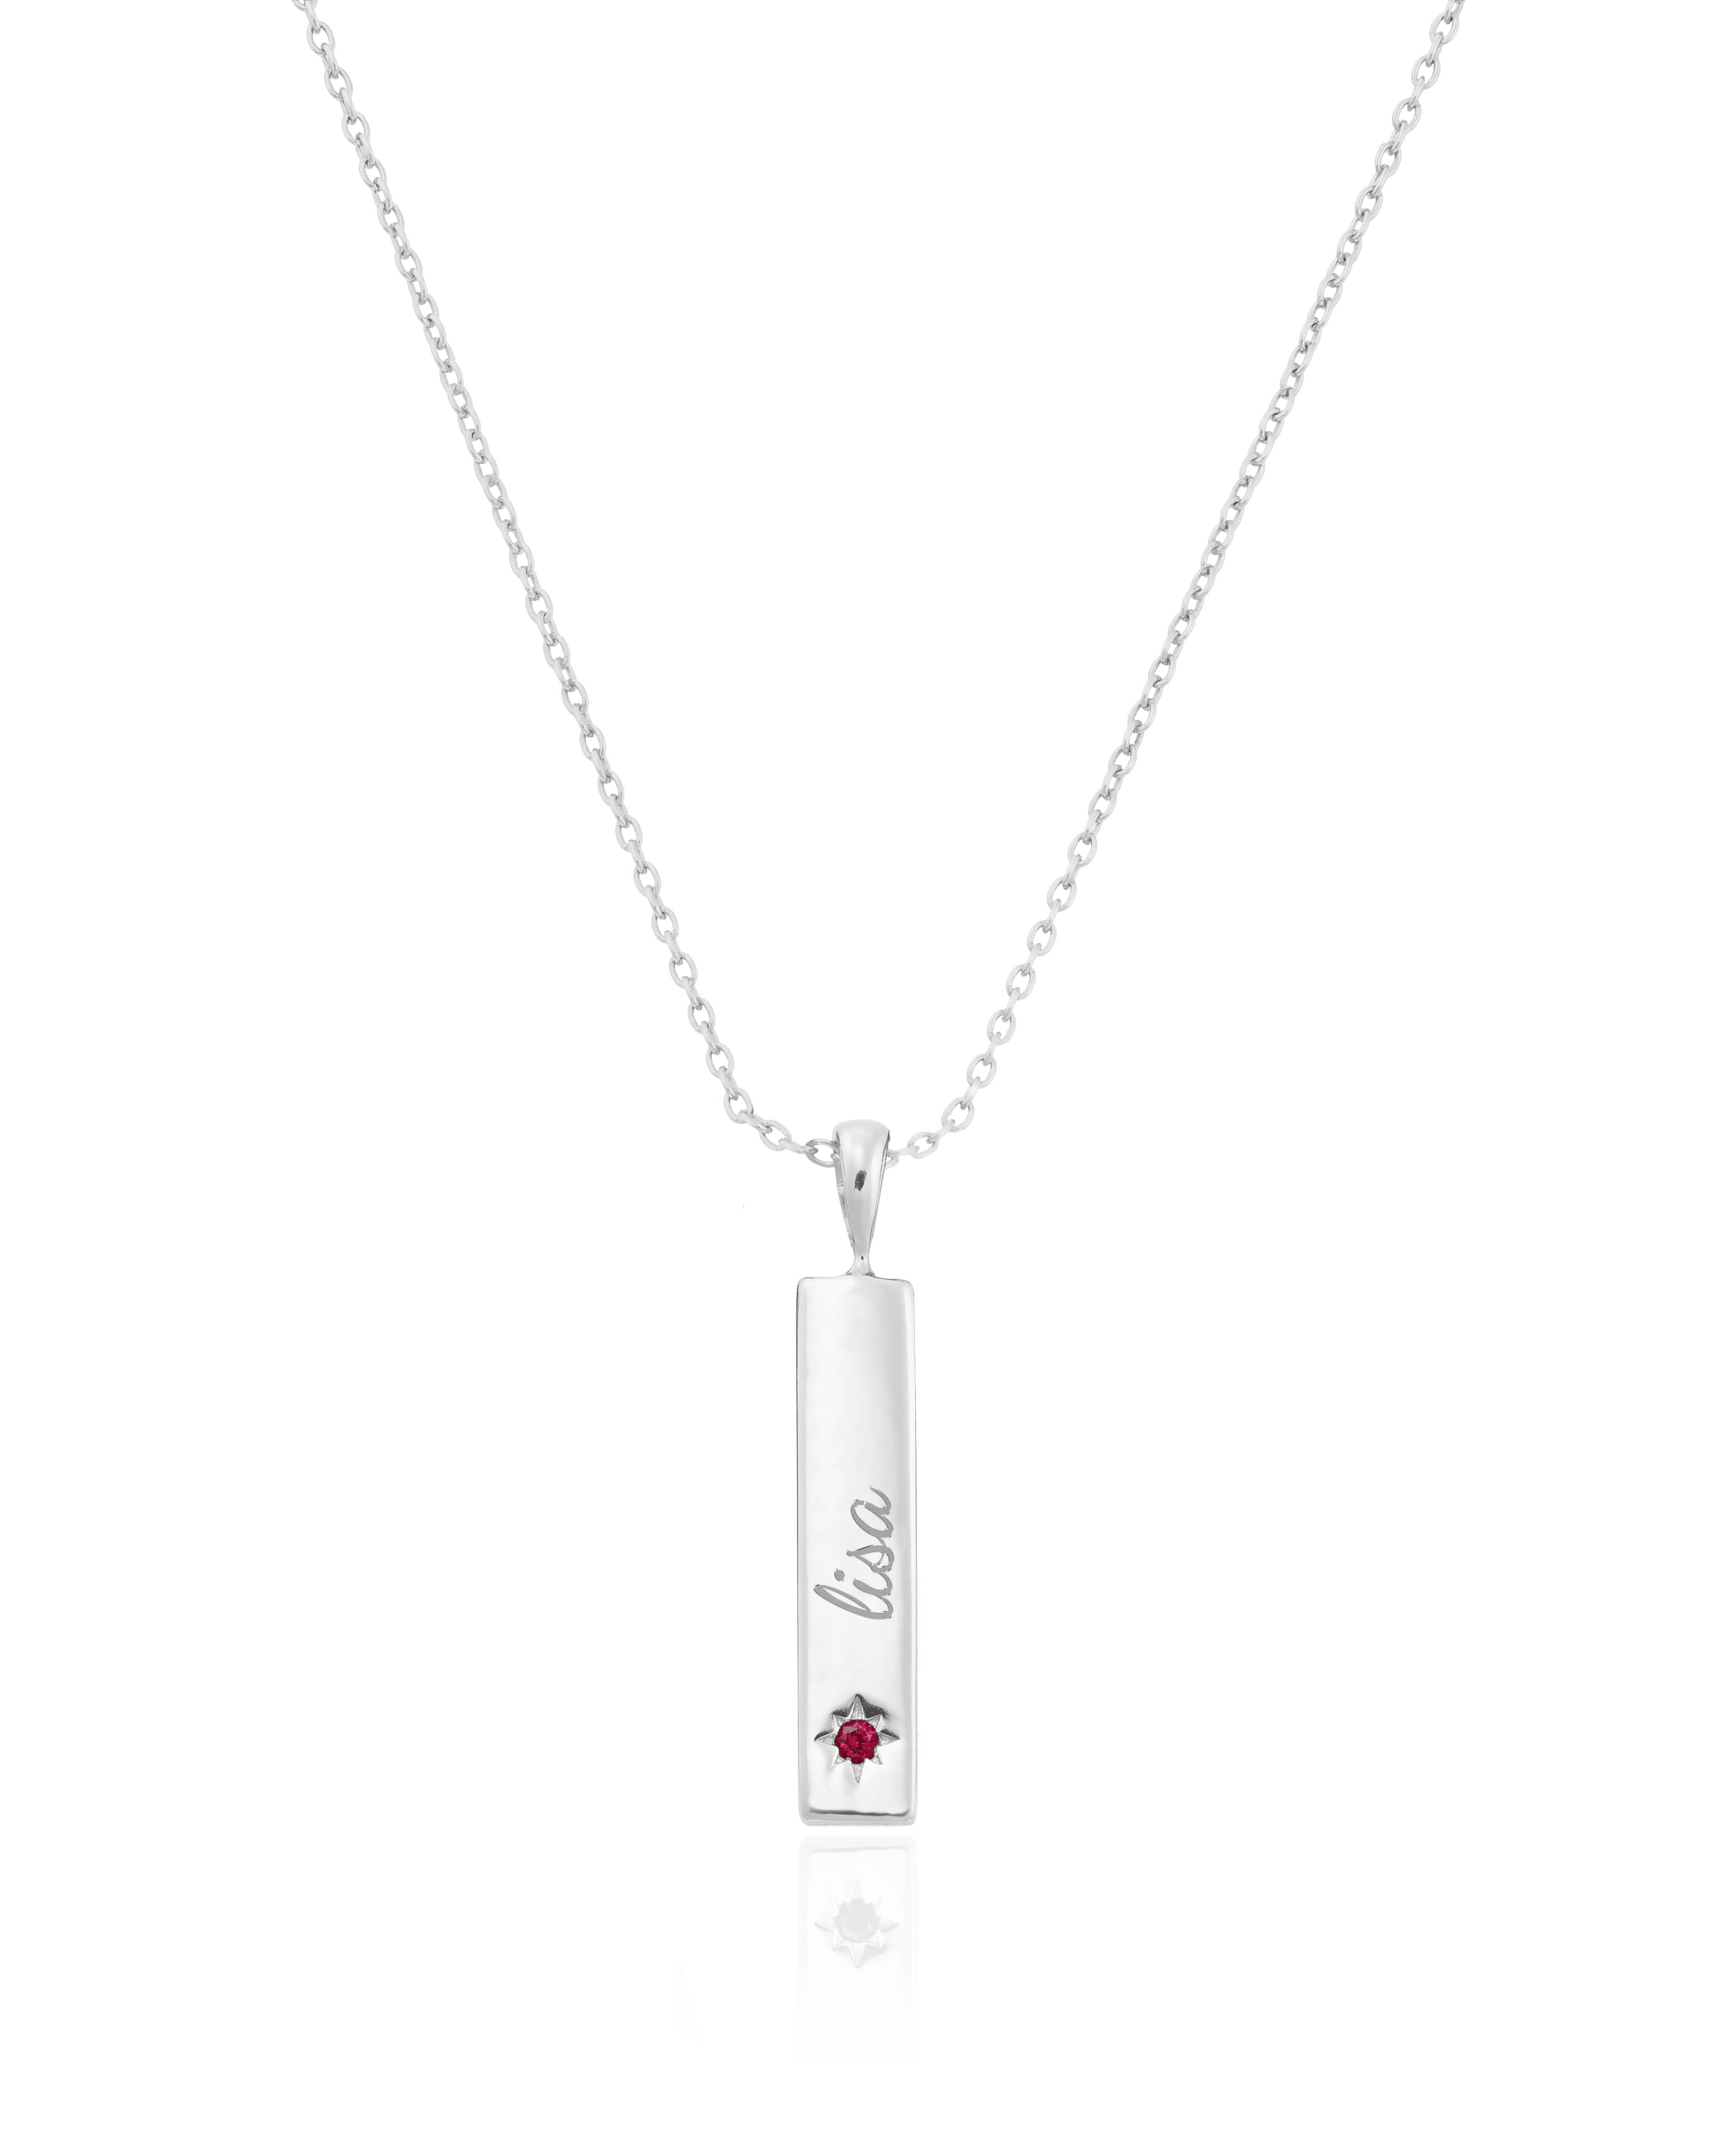 Birthstone Taglet Necklace - 925 Sterling Silver Necklaces magal-dev 1 Bar 16”+2” extender 